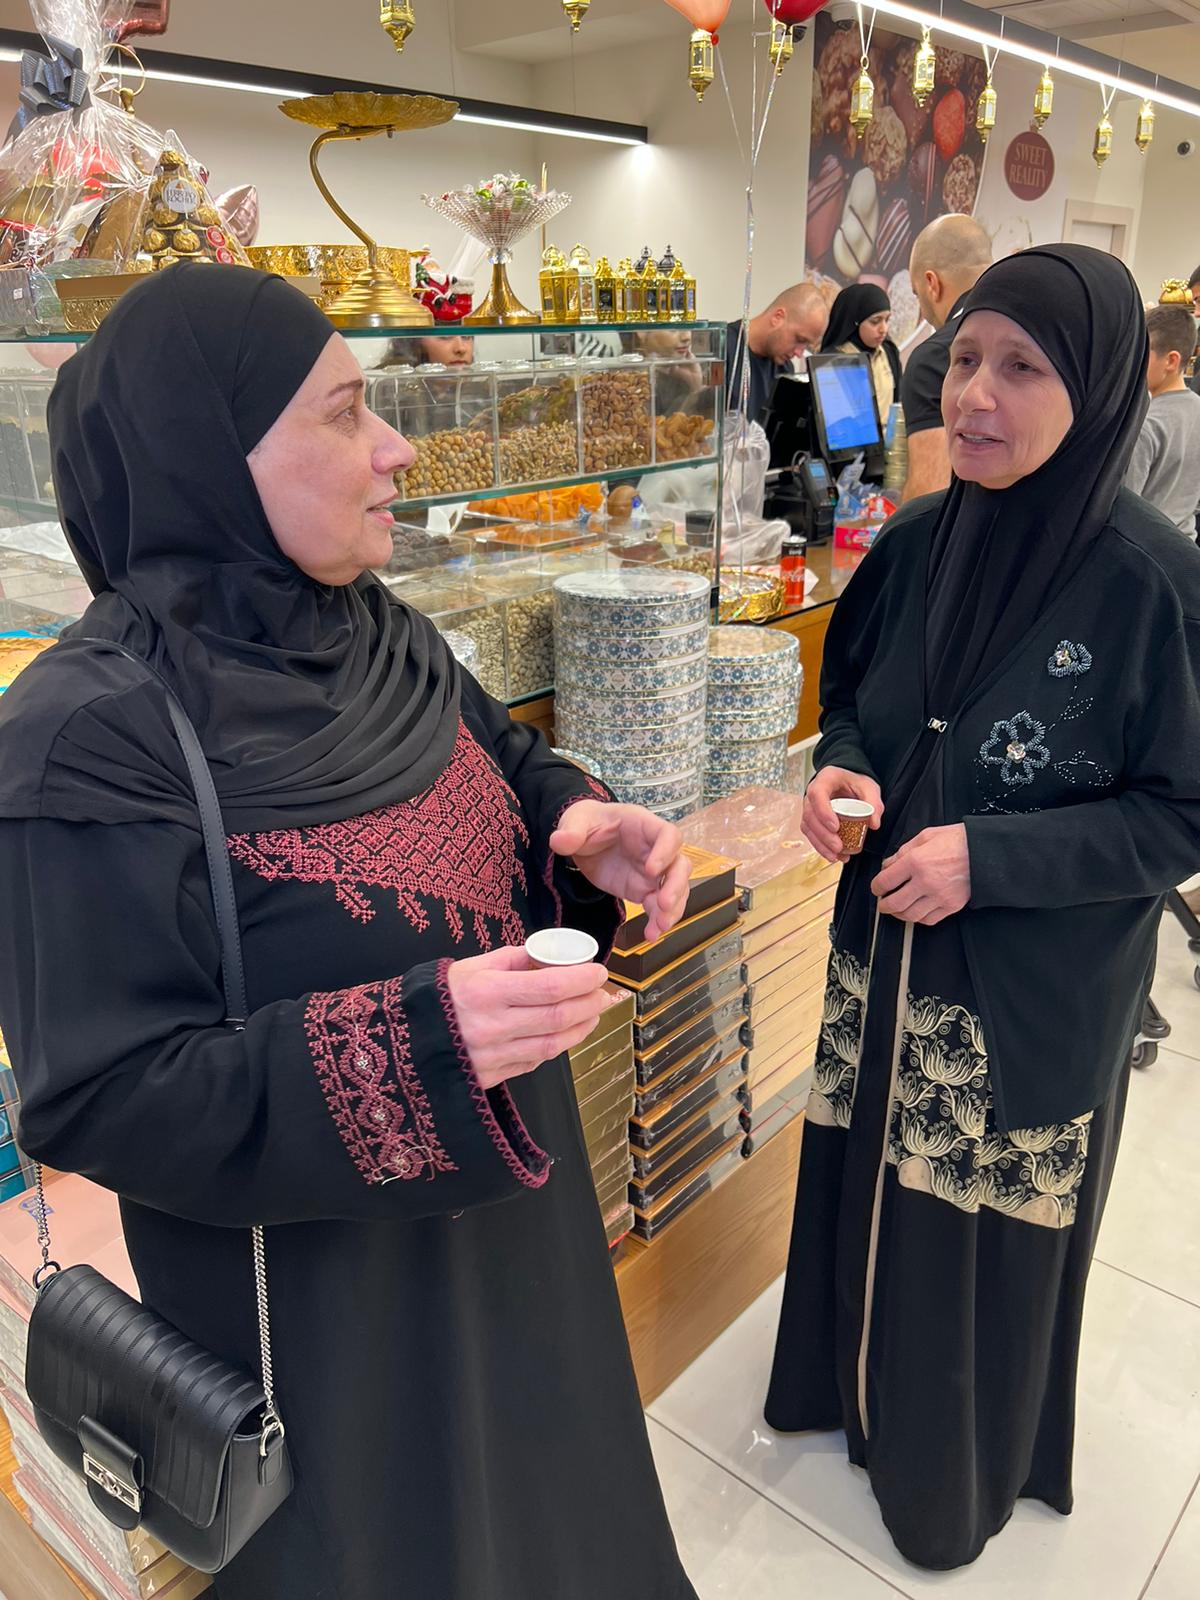  يافا: افتتاح الفرع الجديد لبيت الحلويات والشكولاتة - سويت رياليتي